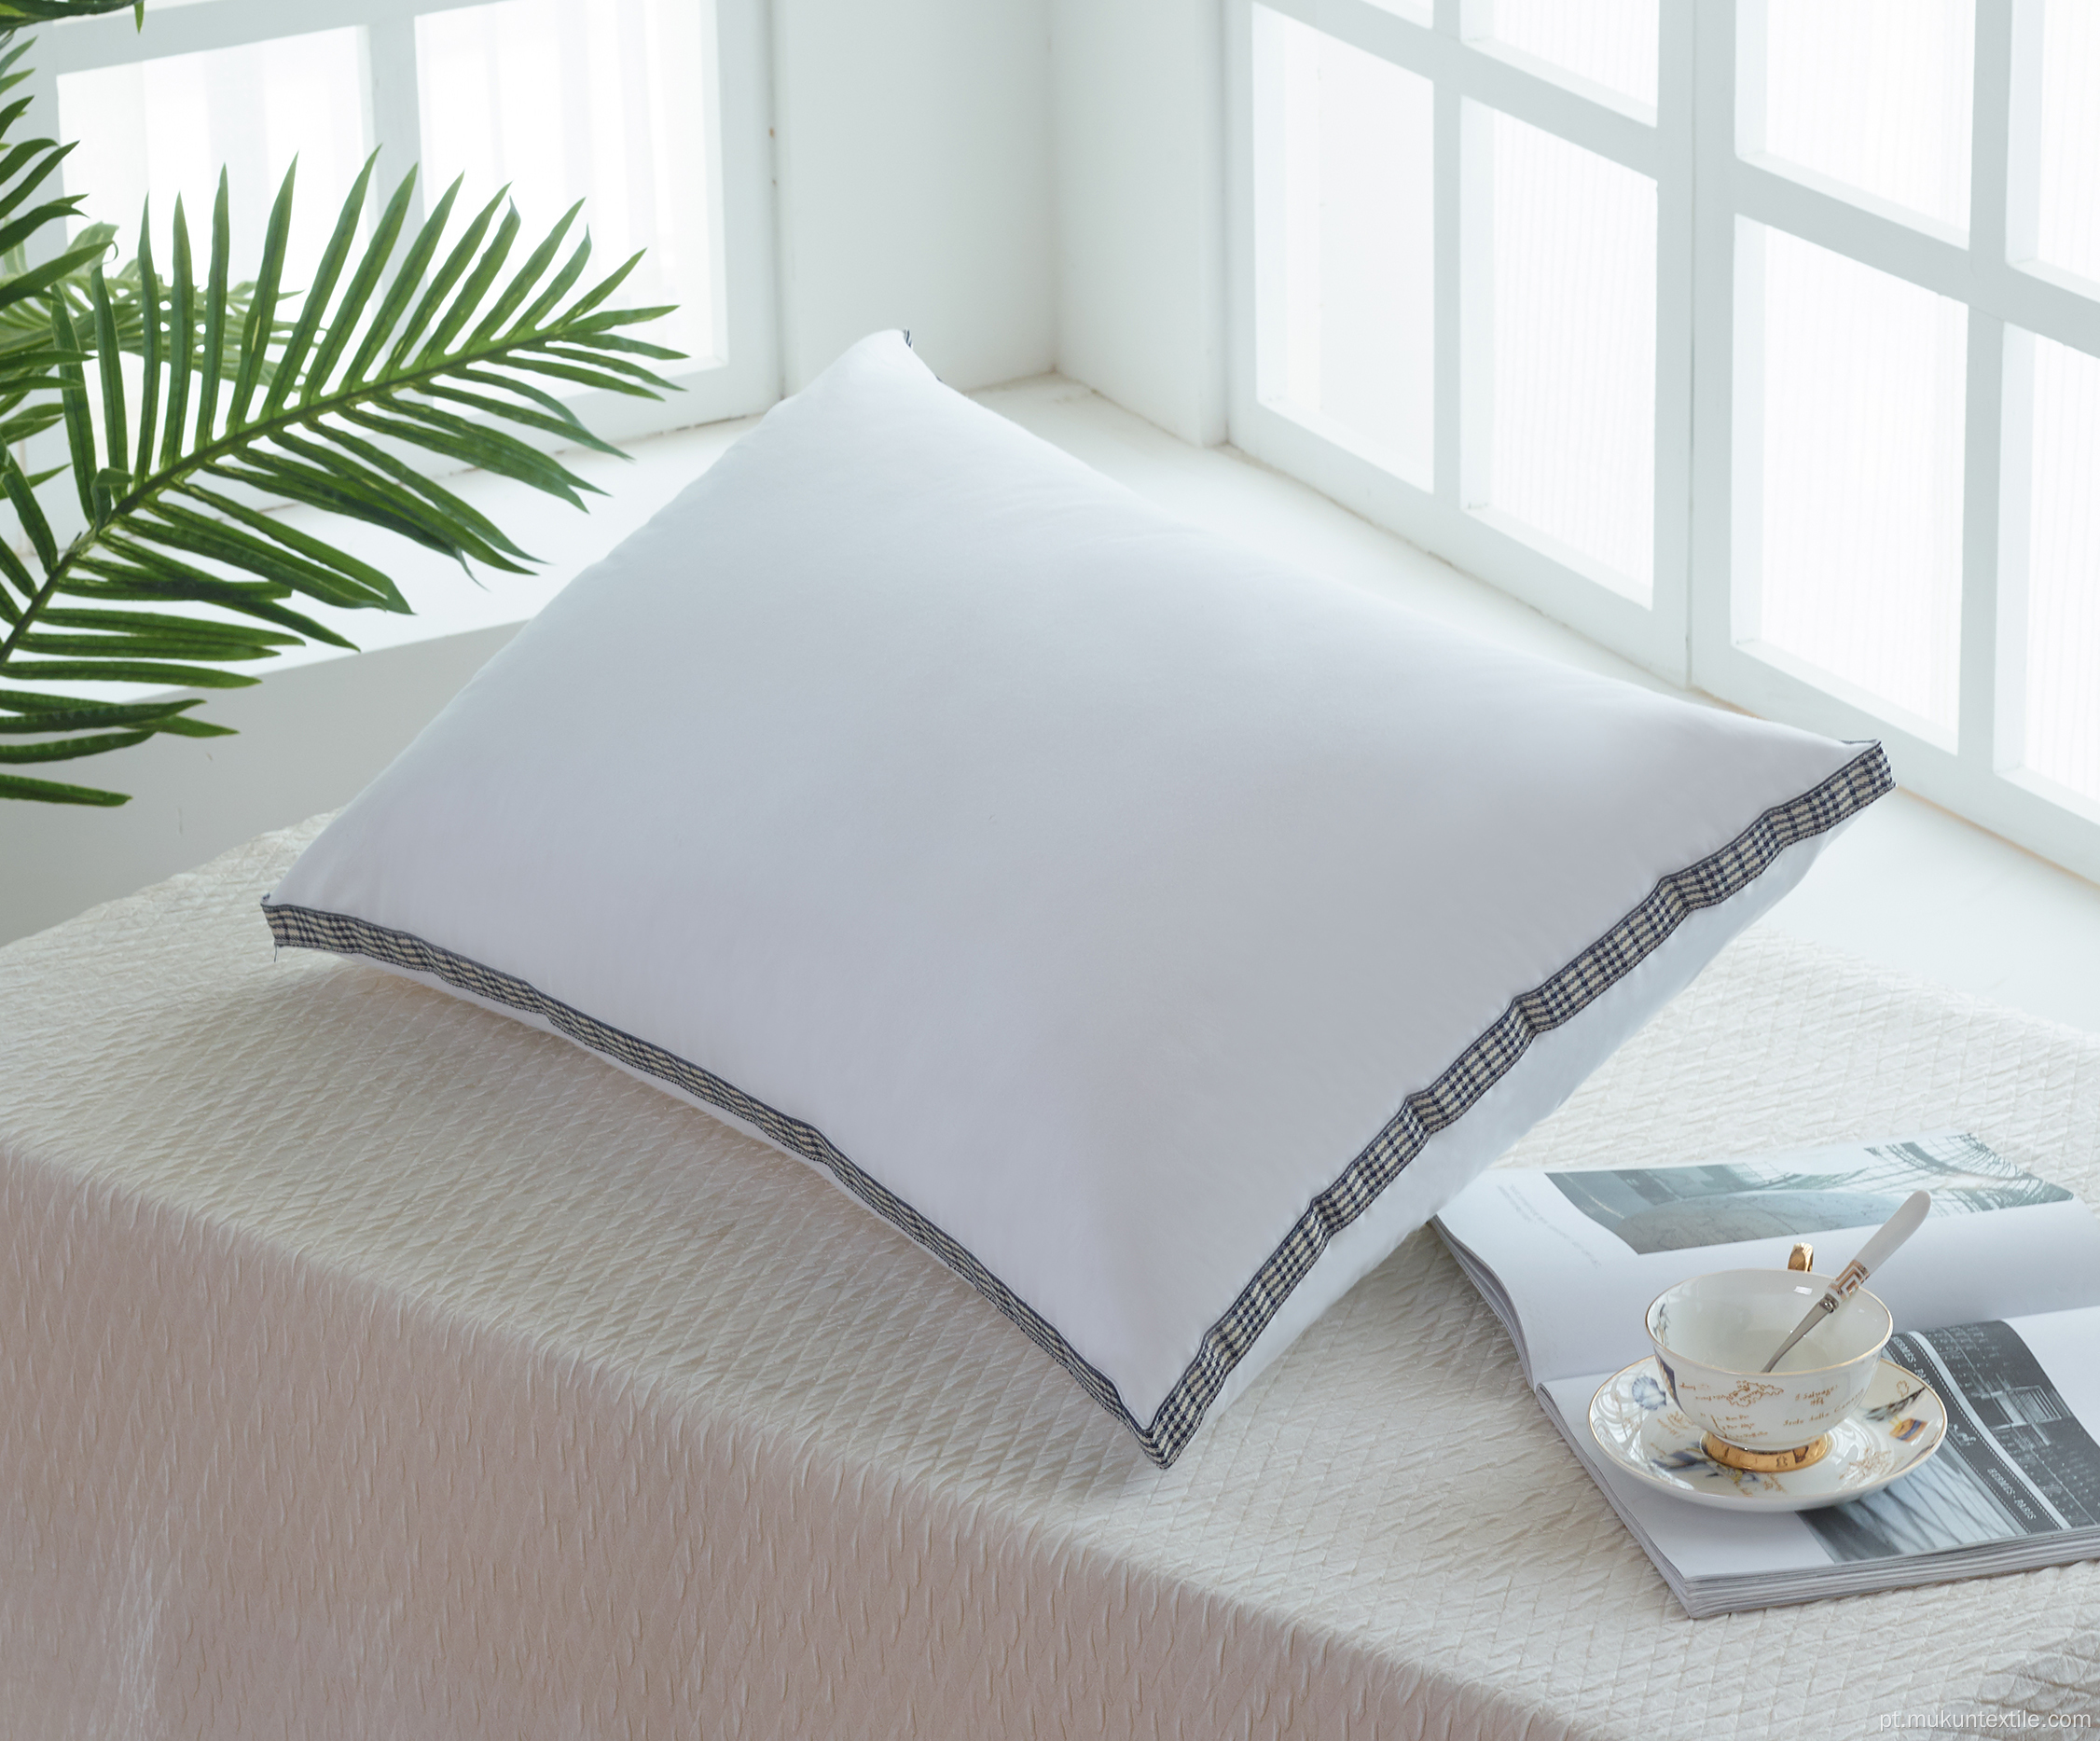 Cheap cama duplo conforto hilton travesseiro para dormir